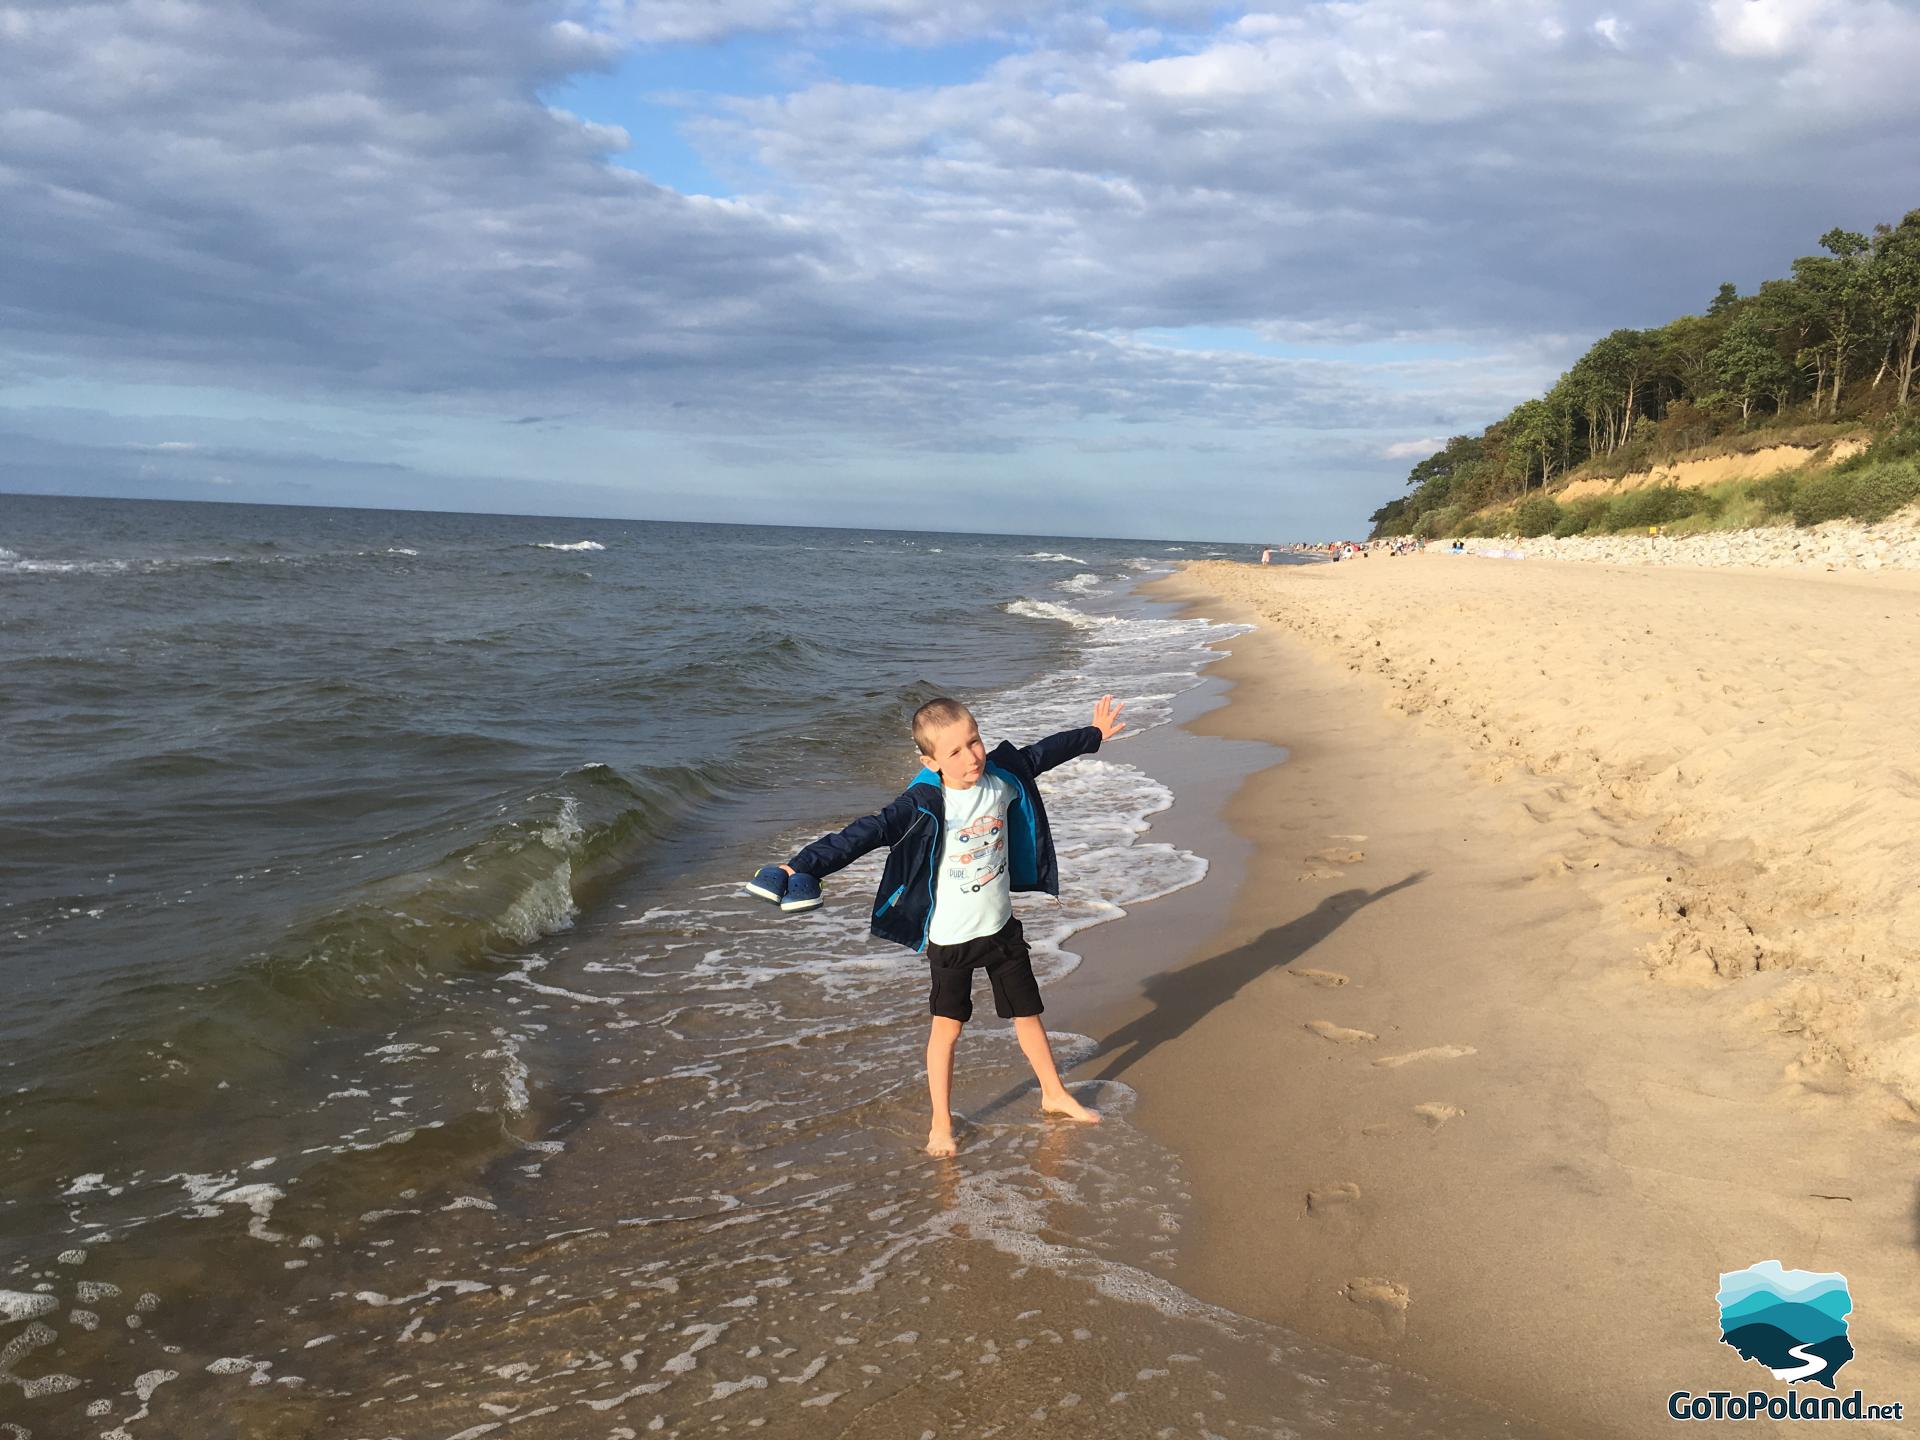 a boy is on the beach